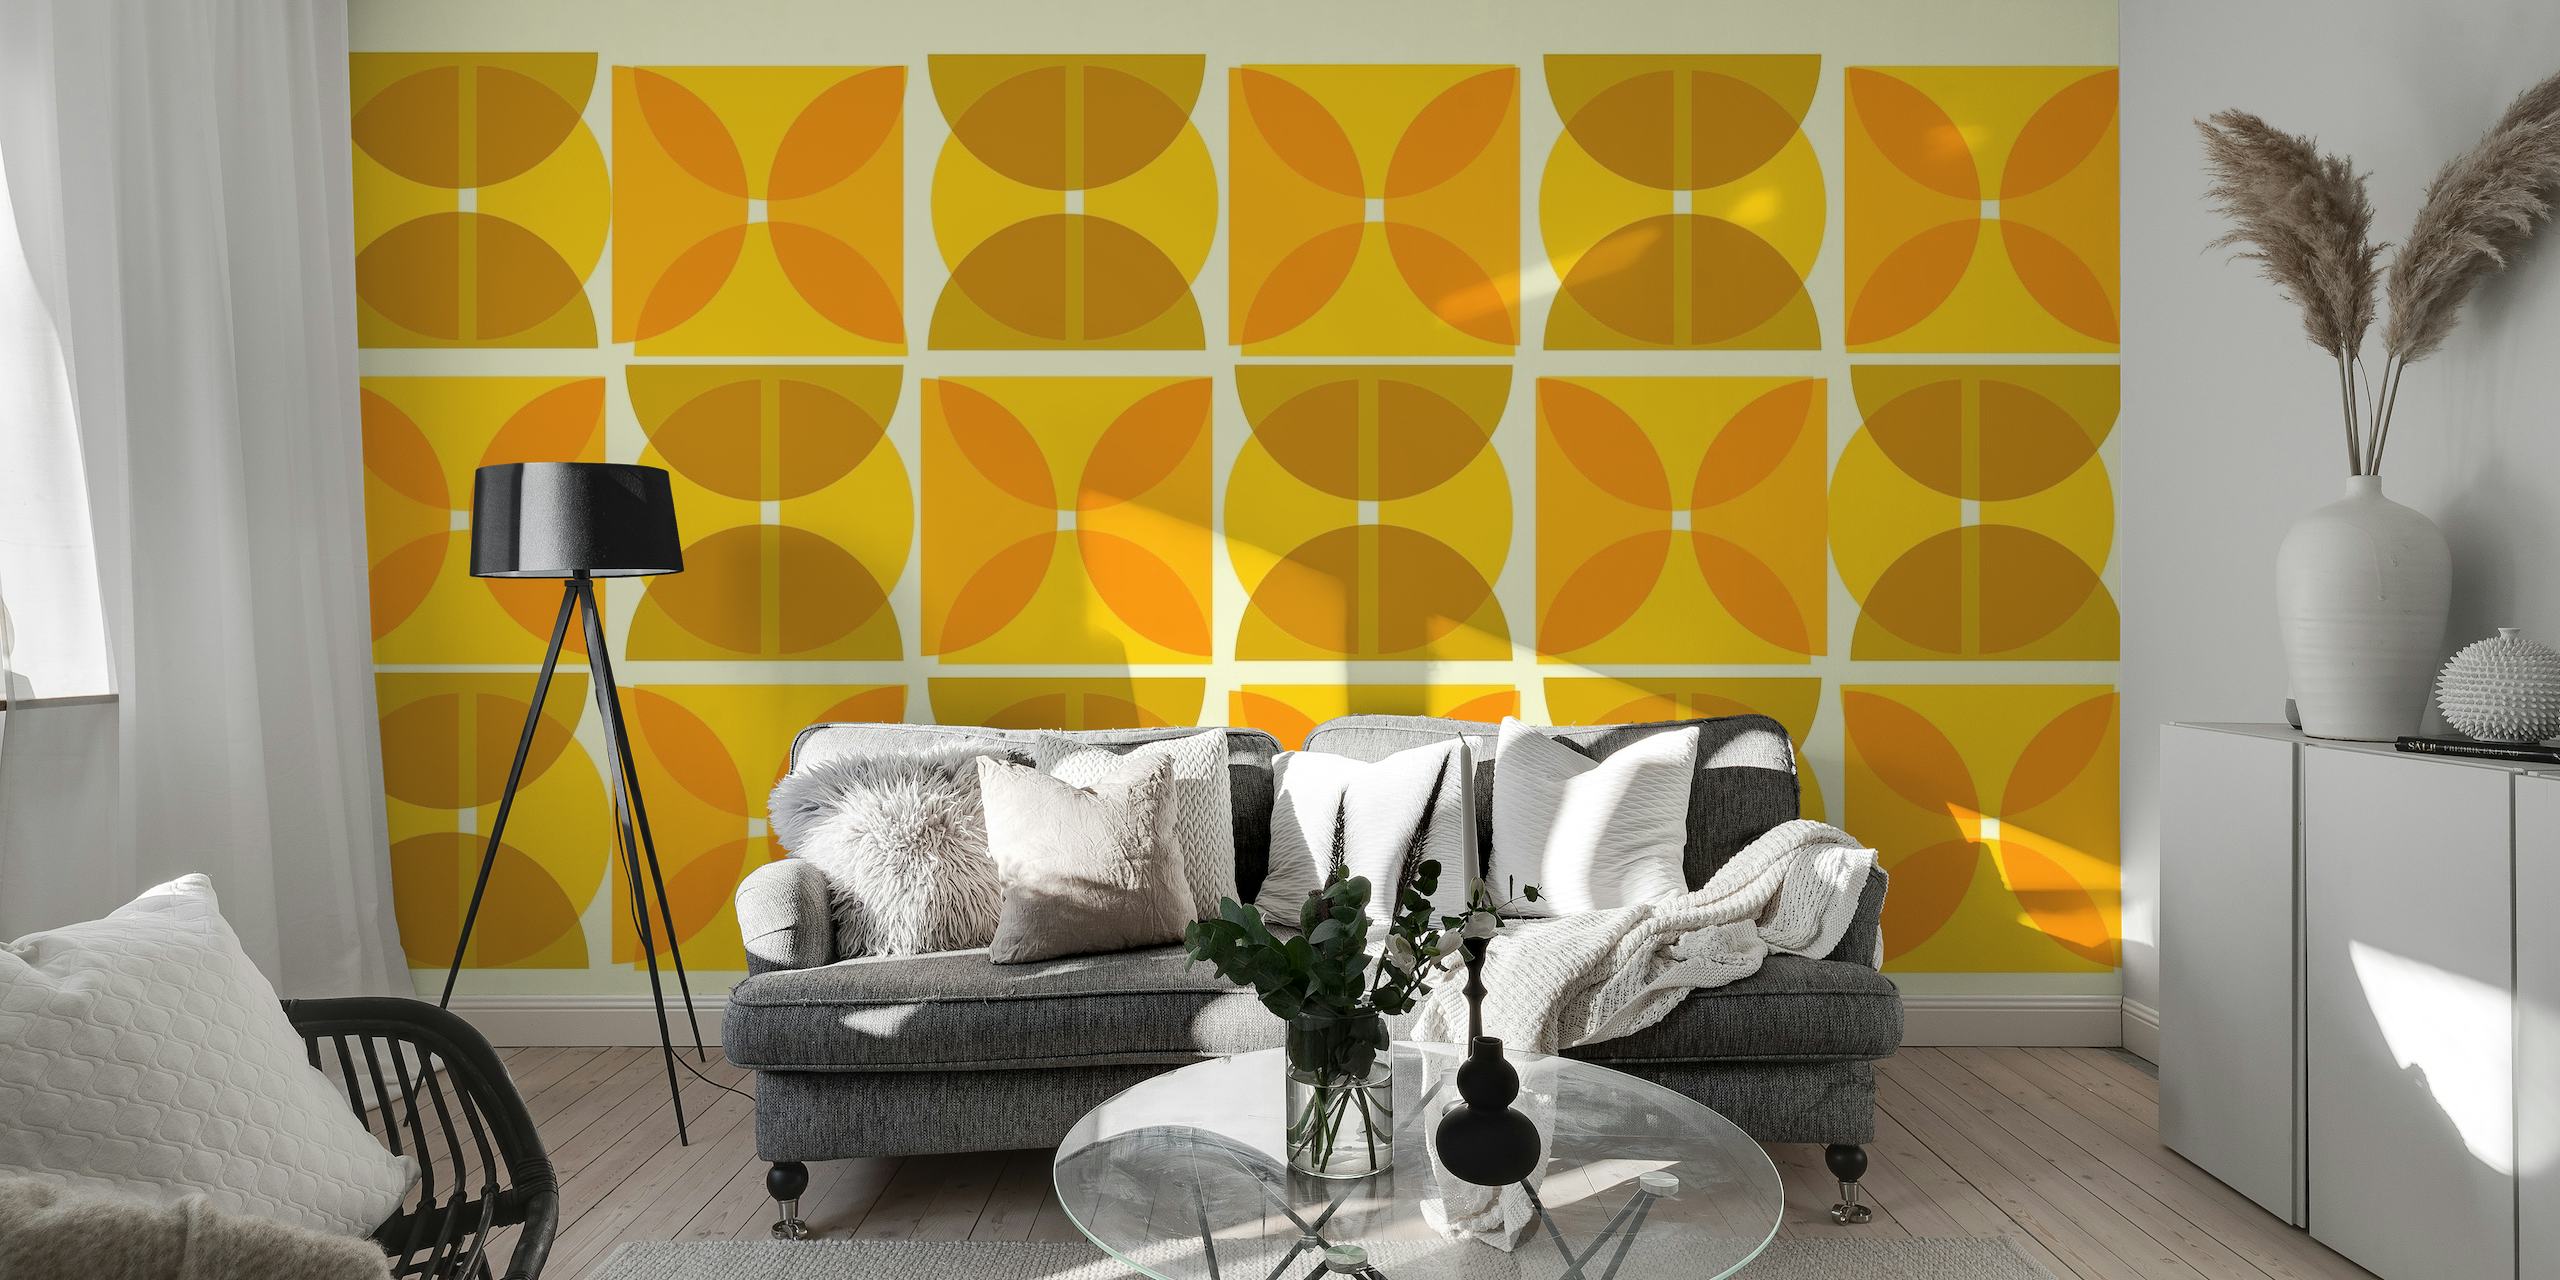 Zidna slika inspirirana Bauhausom s apstraktnim geometrijskim oblicima u žutim i smeđim tonovima